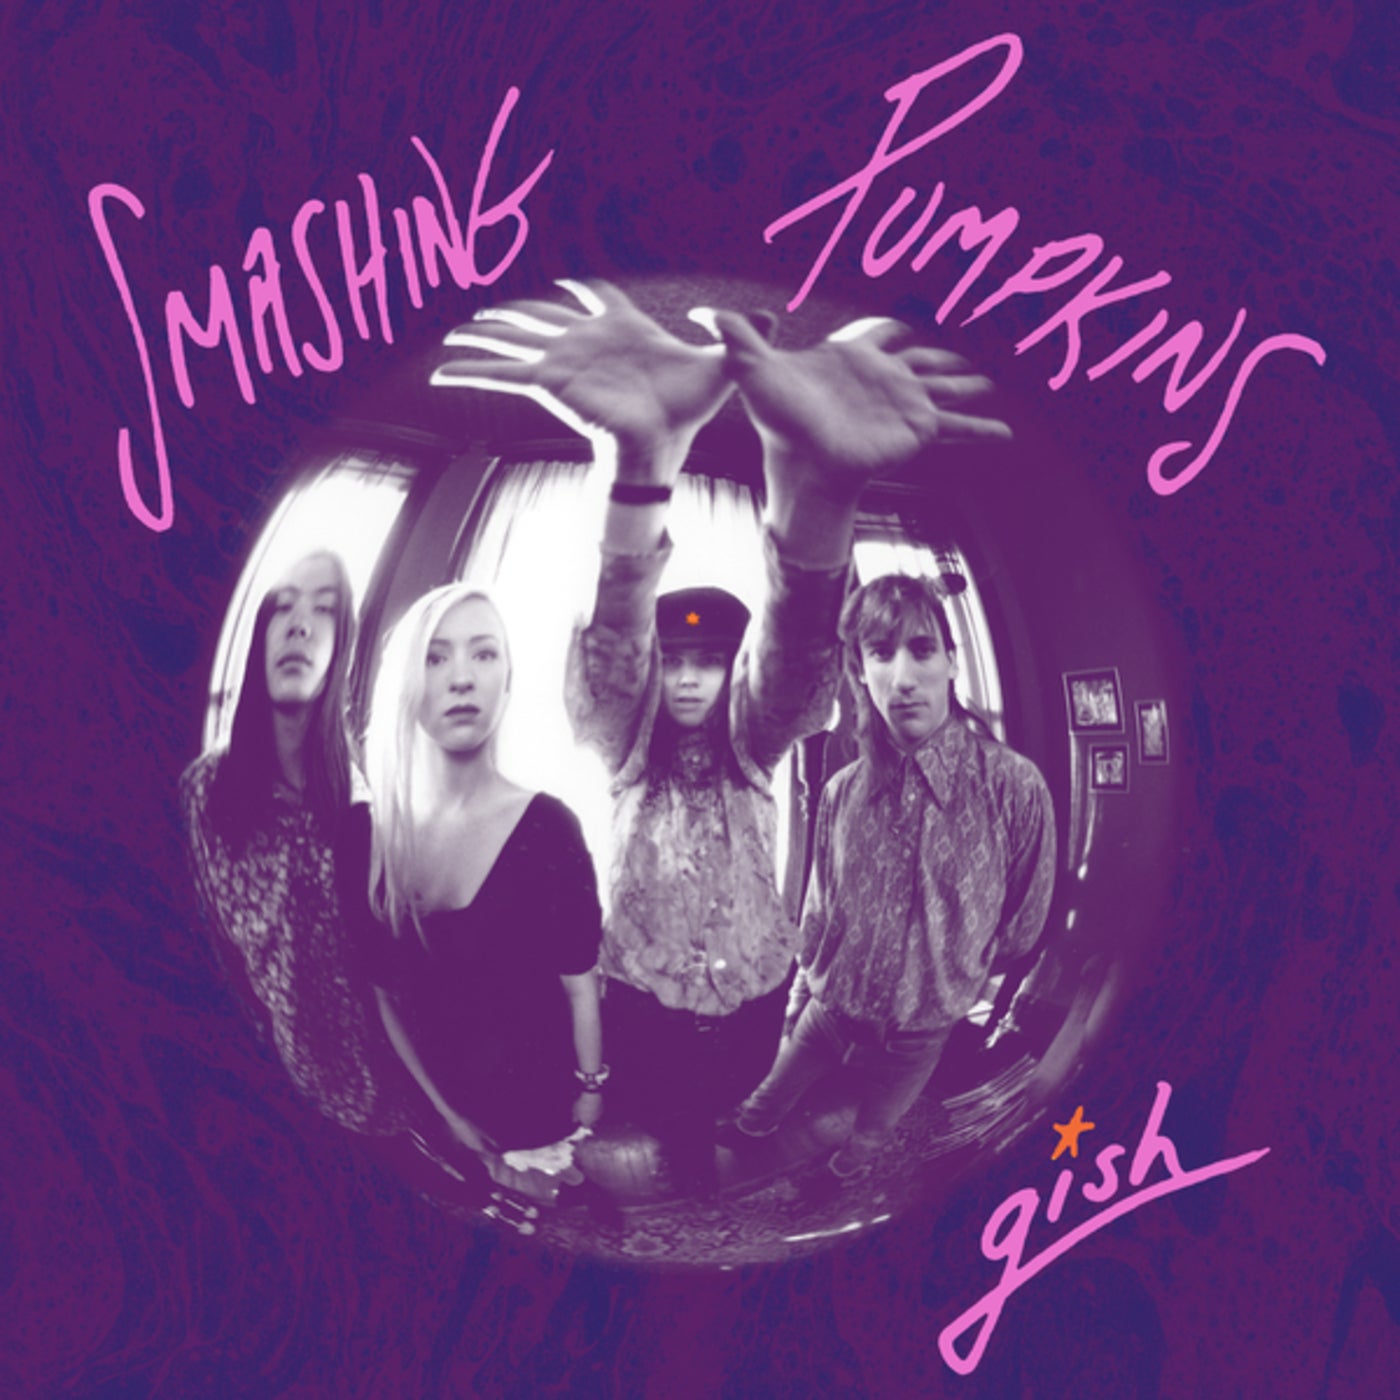 Gish by Smashing Pumpkins on Beatsource